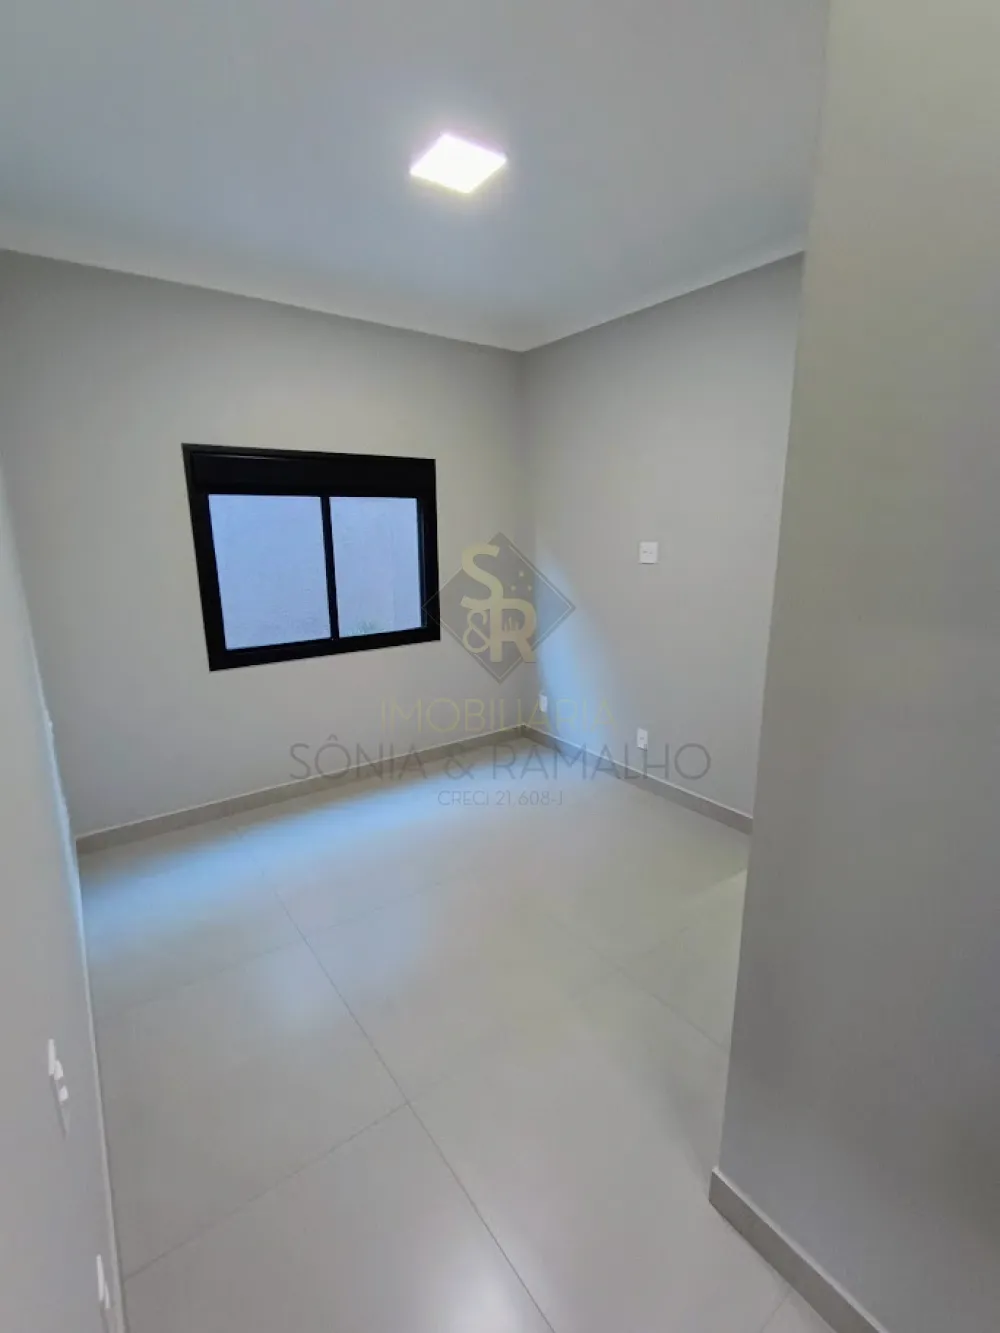 Comprar Casas Residenciais / Condomínio em Ribeirão Preto R$ 1.050.000,00 - Foto 17